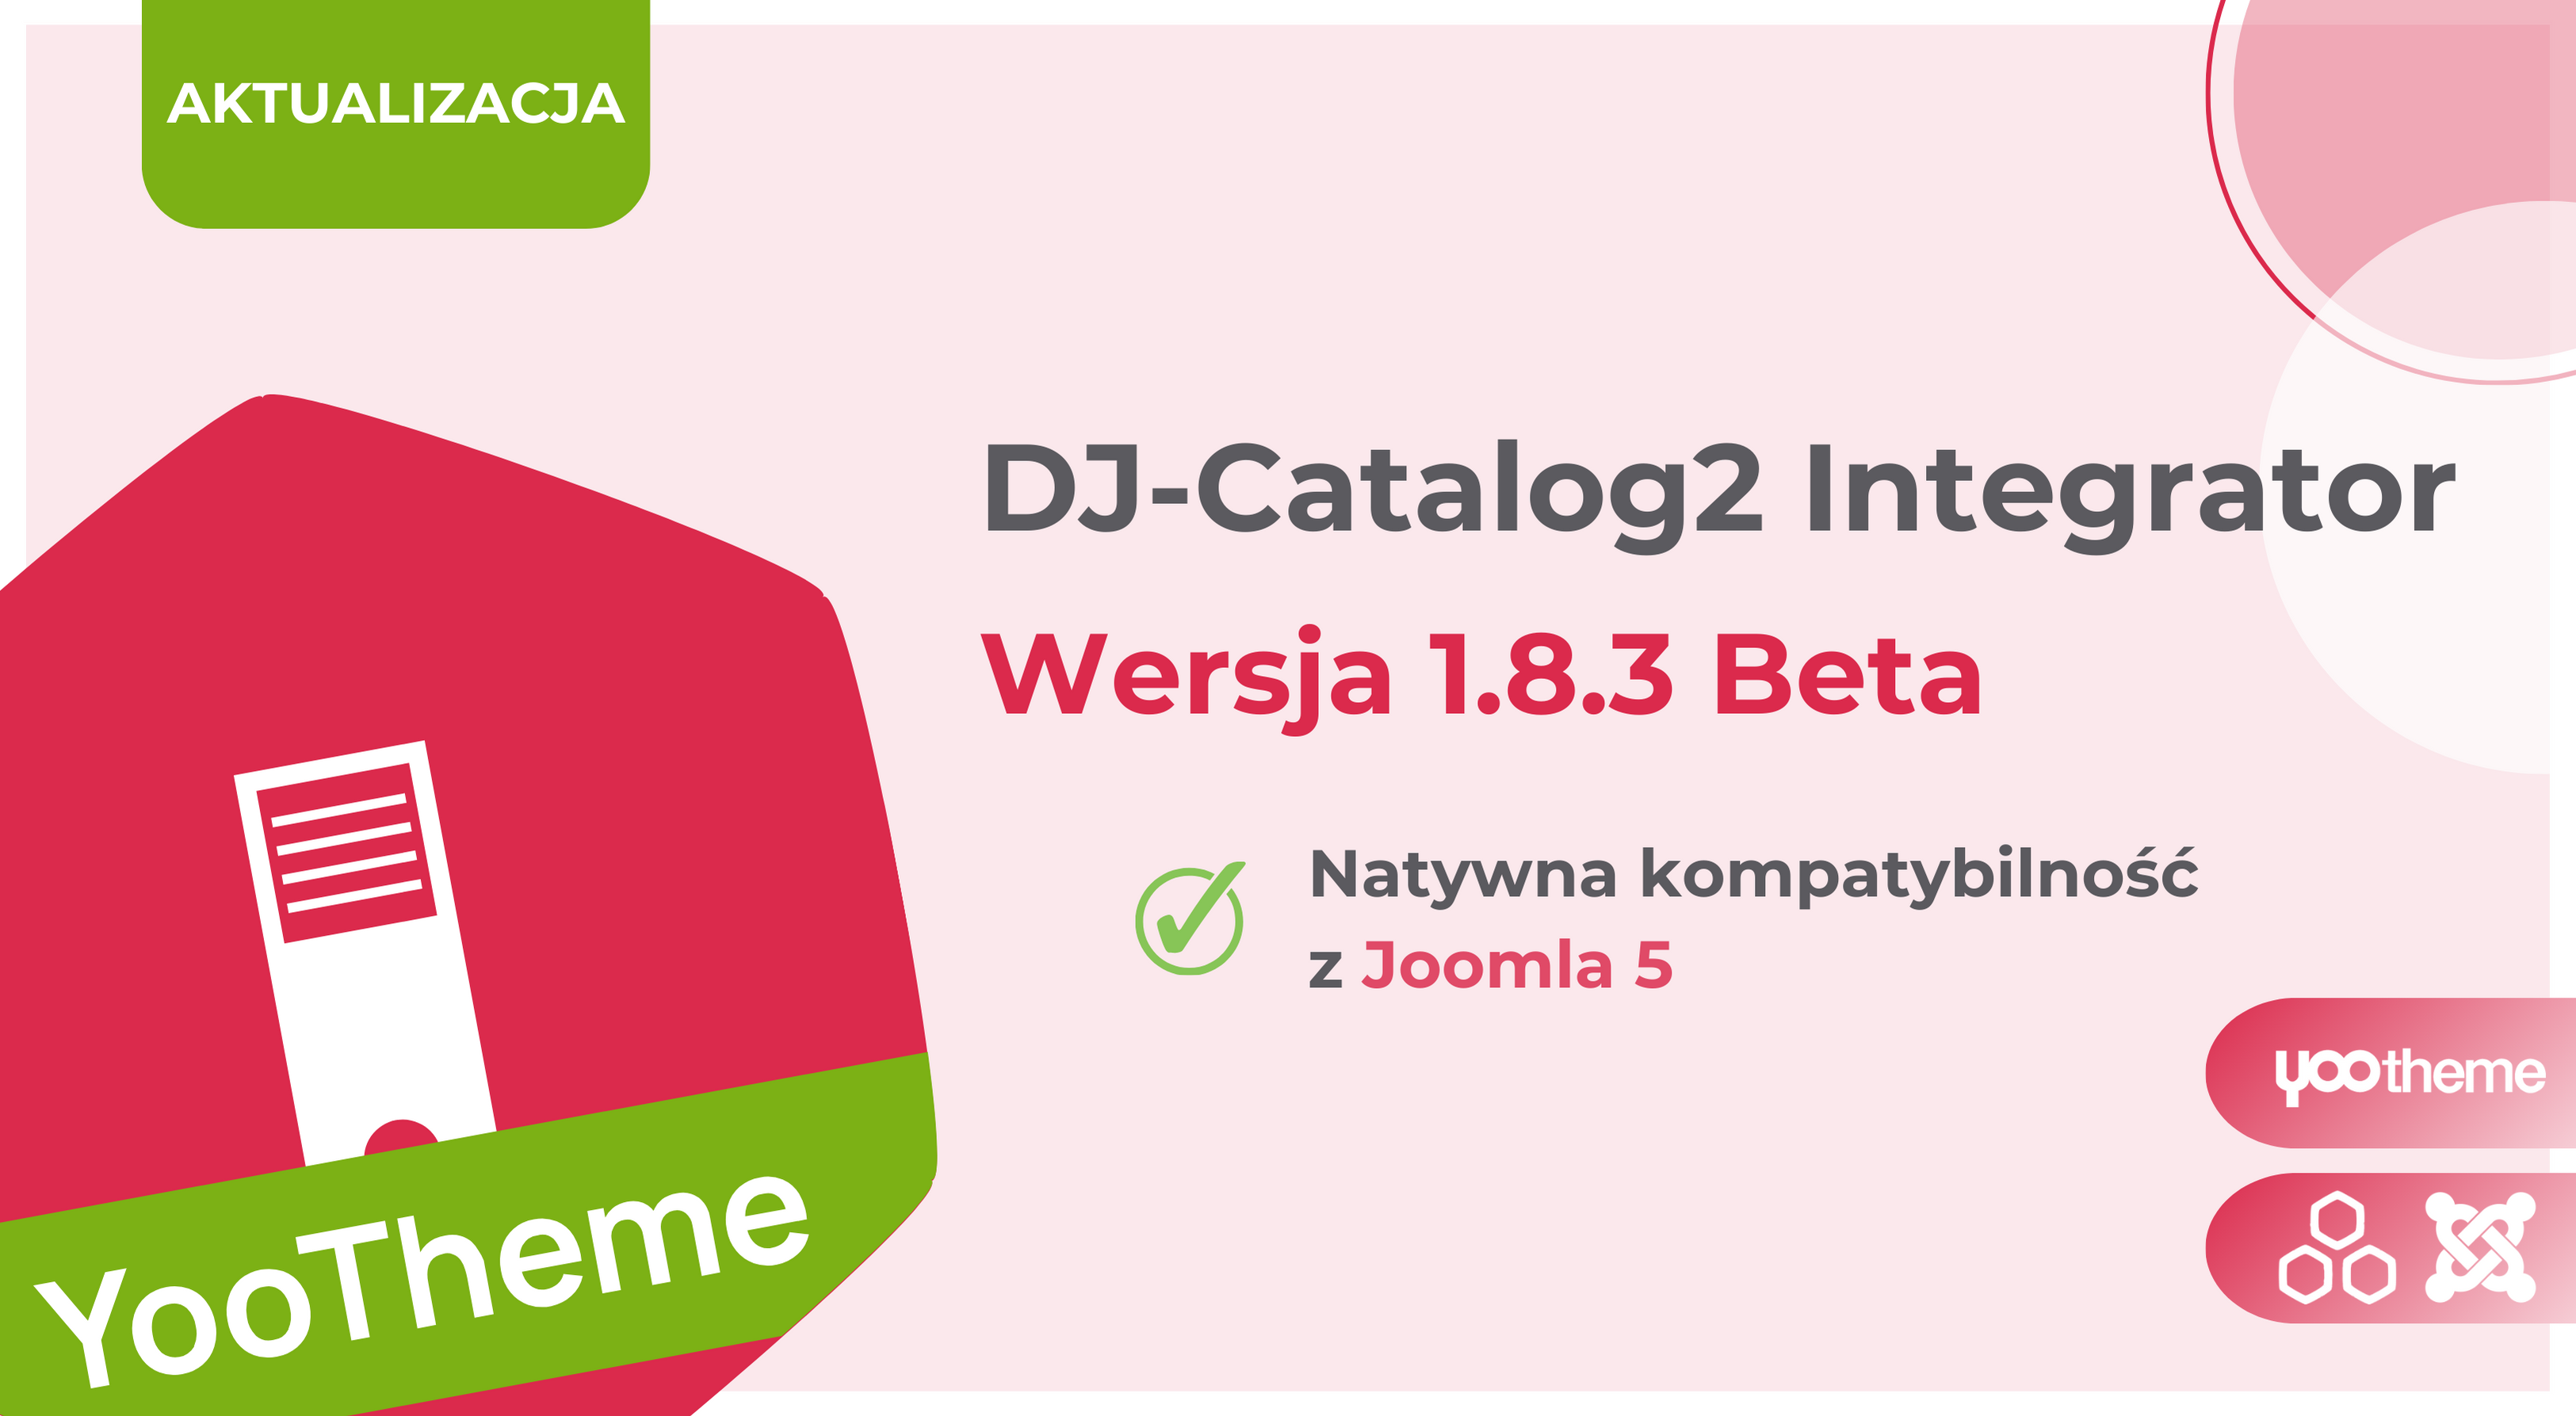 [AKTUALIZACJA] Dodatek DJ-Catalog2 Integrator 1.8.3 z natywną kompatybilnością dla Joomla 5